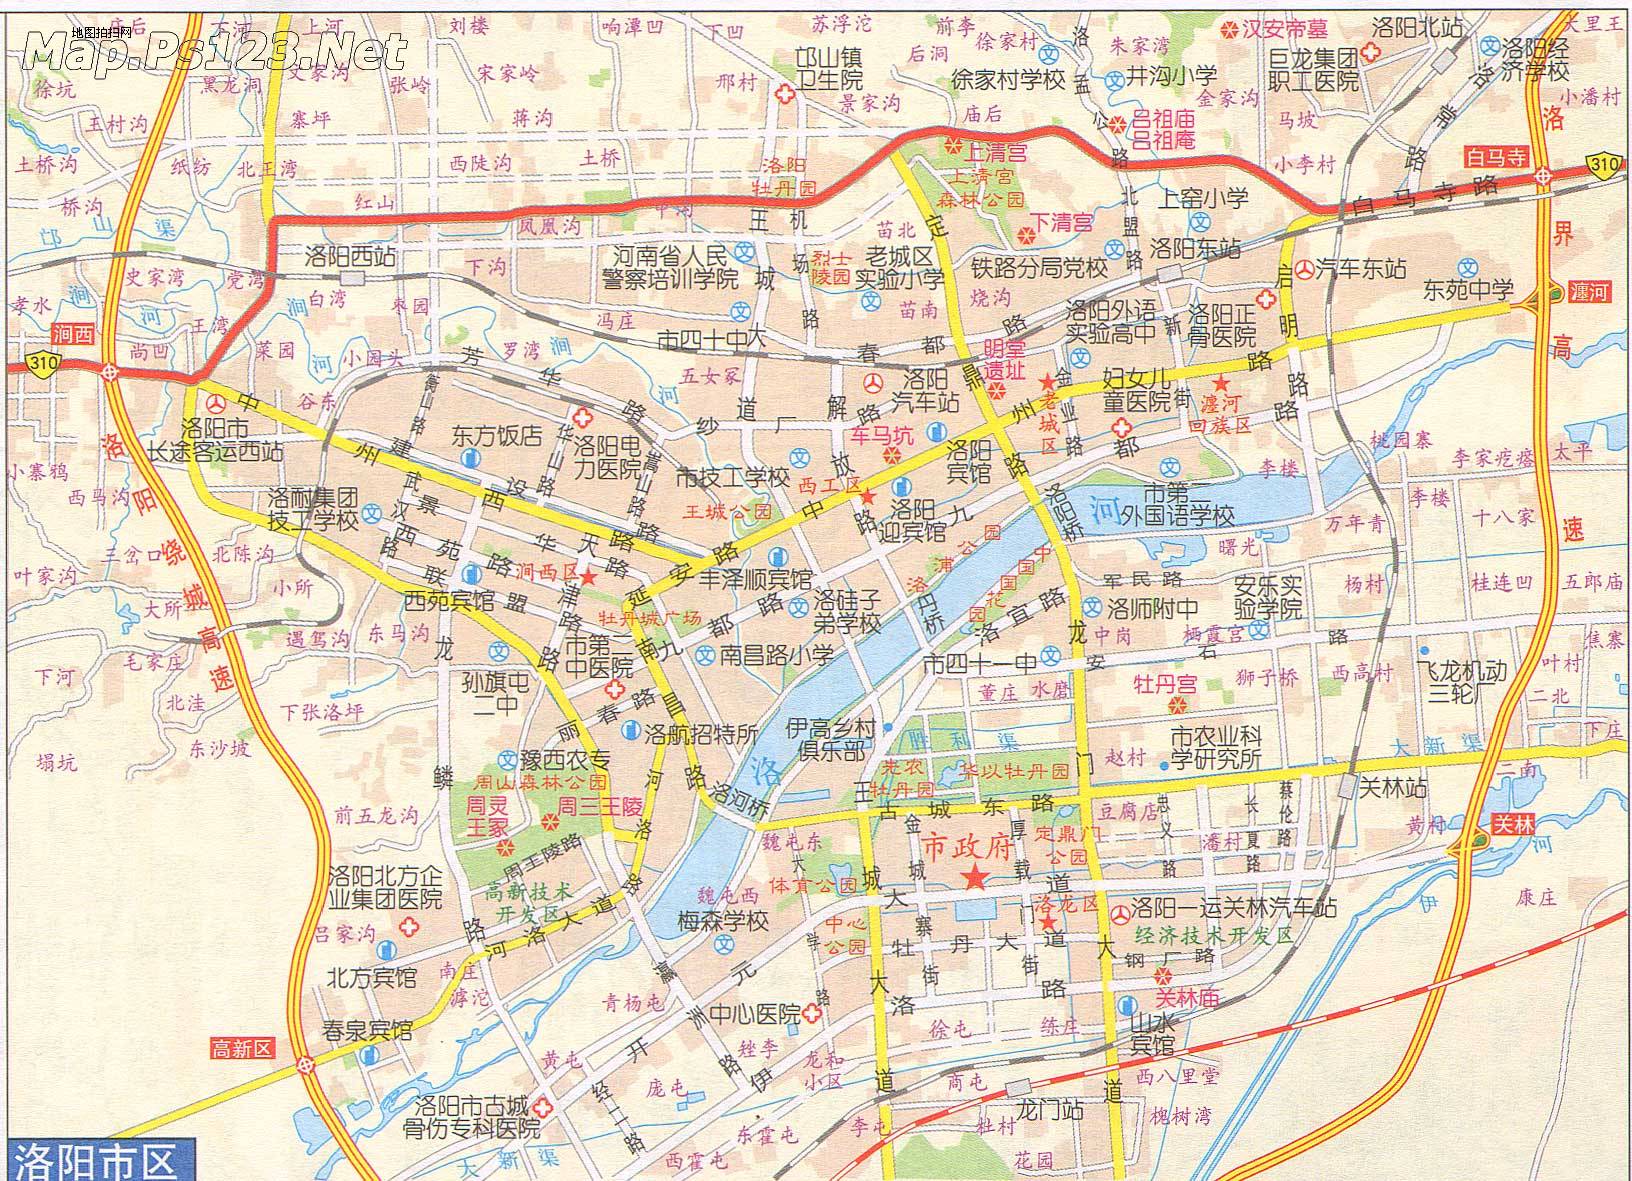 市区地图  相关: 郑州市  三门峡  洛阳市  南阳市  济源市  焦作